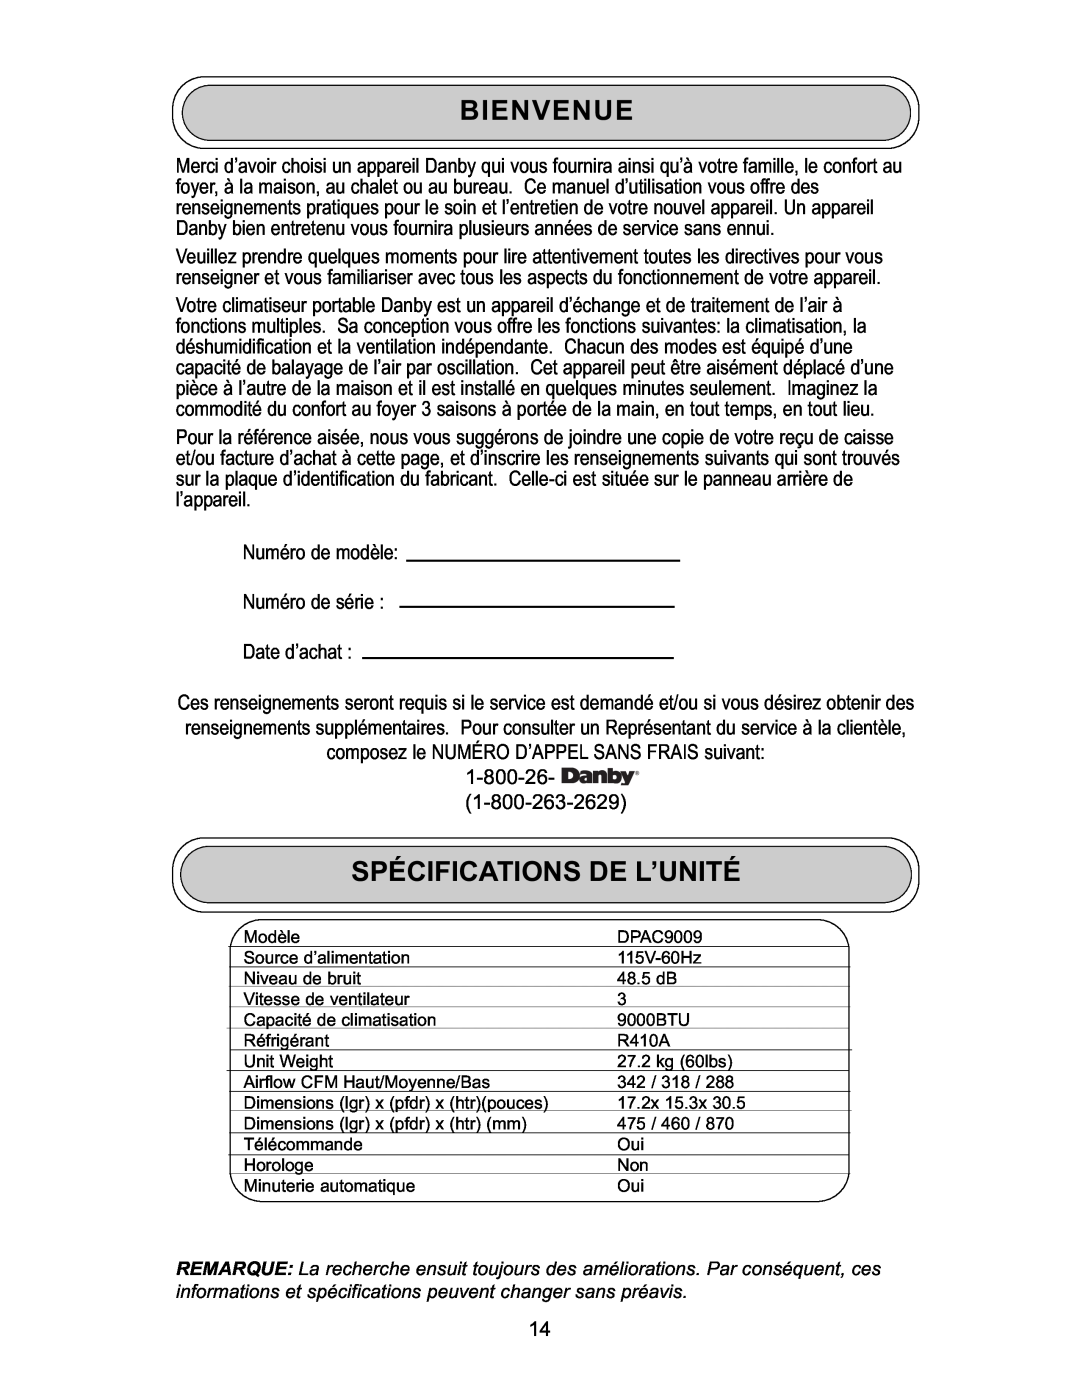 Danby DPAC 9009 manual Bienvenue, Spécifications De L’Unité, Numéro de modèle Numéro de série Date d’achat 